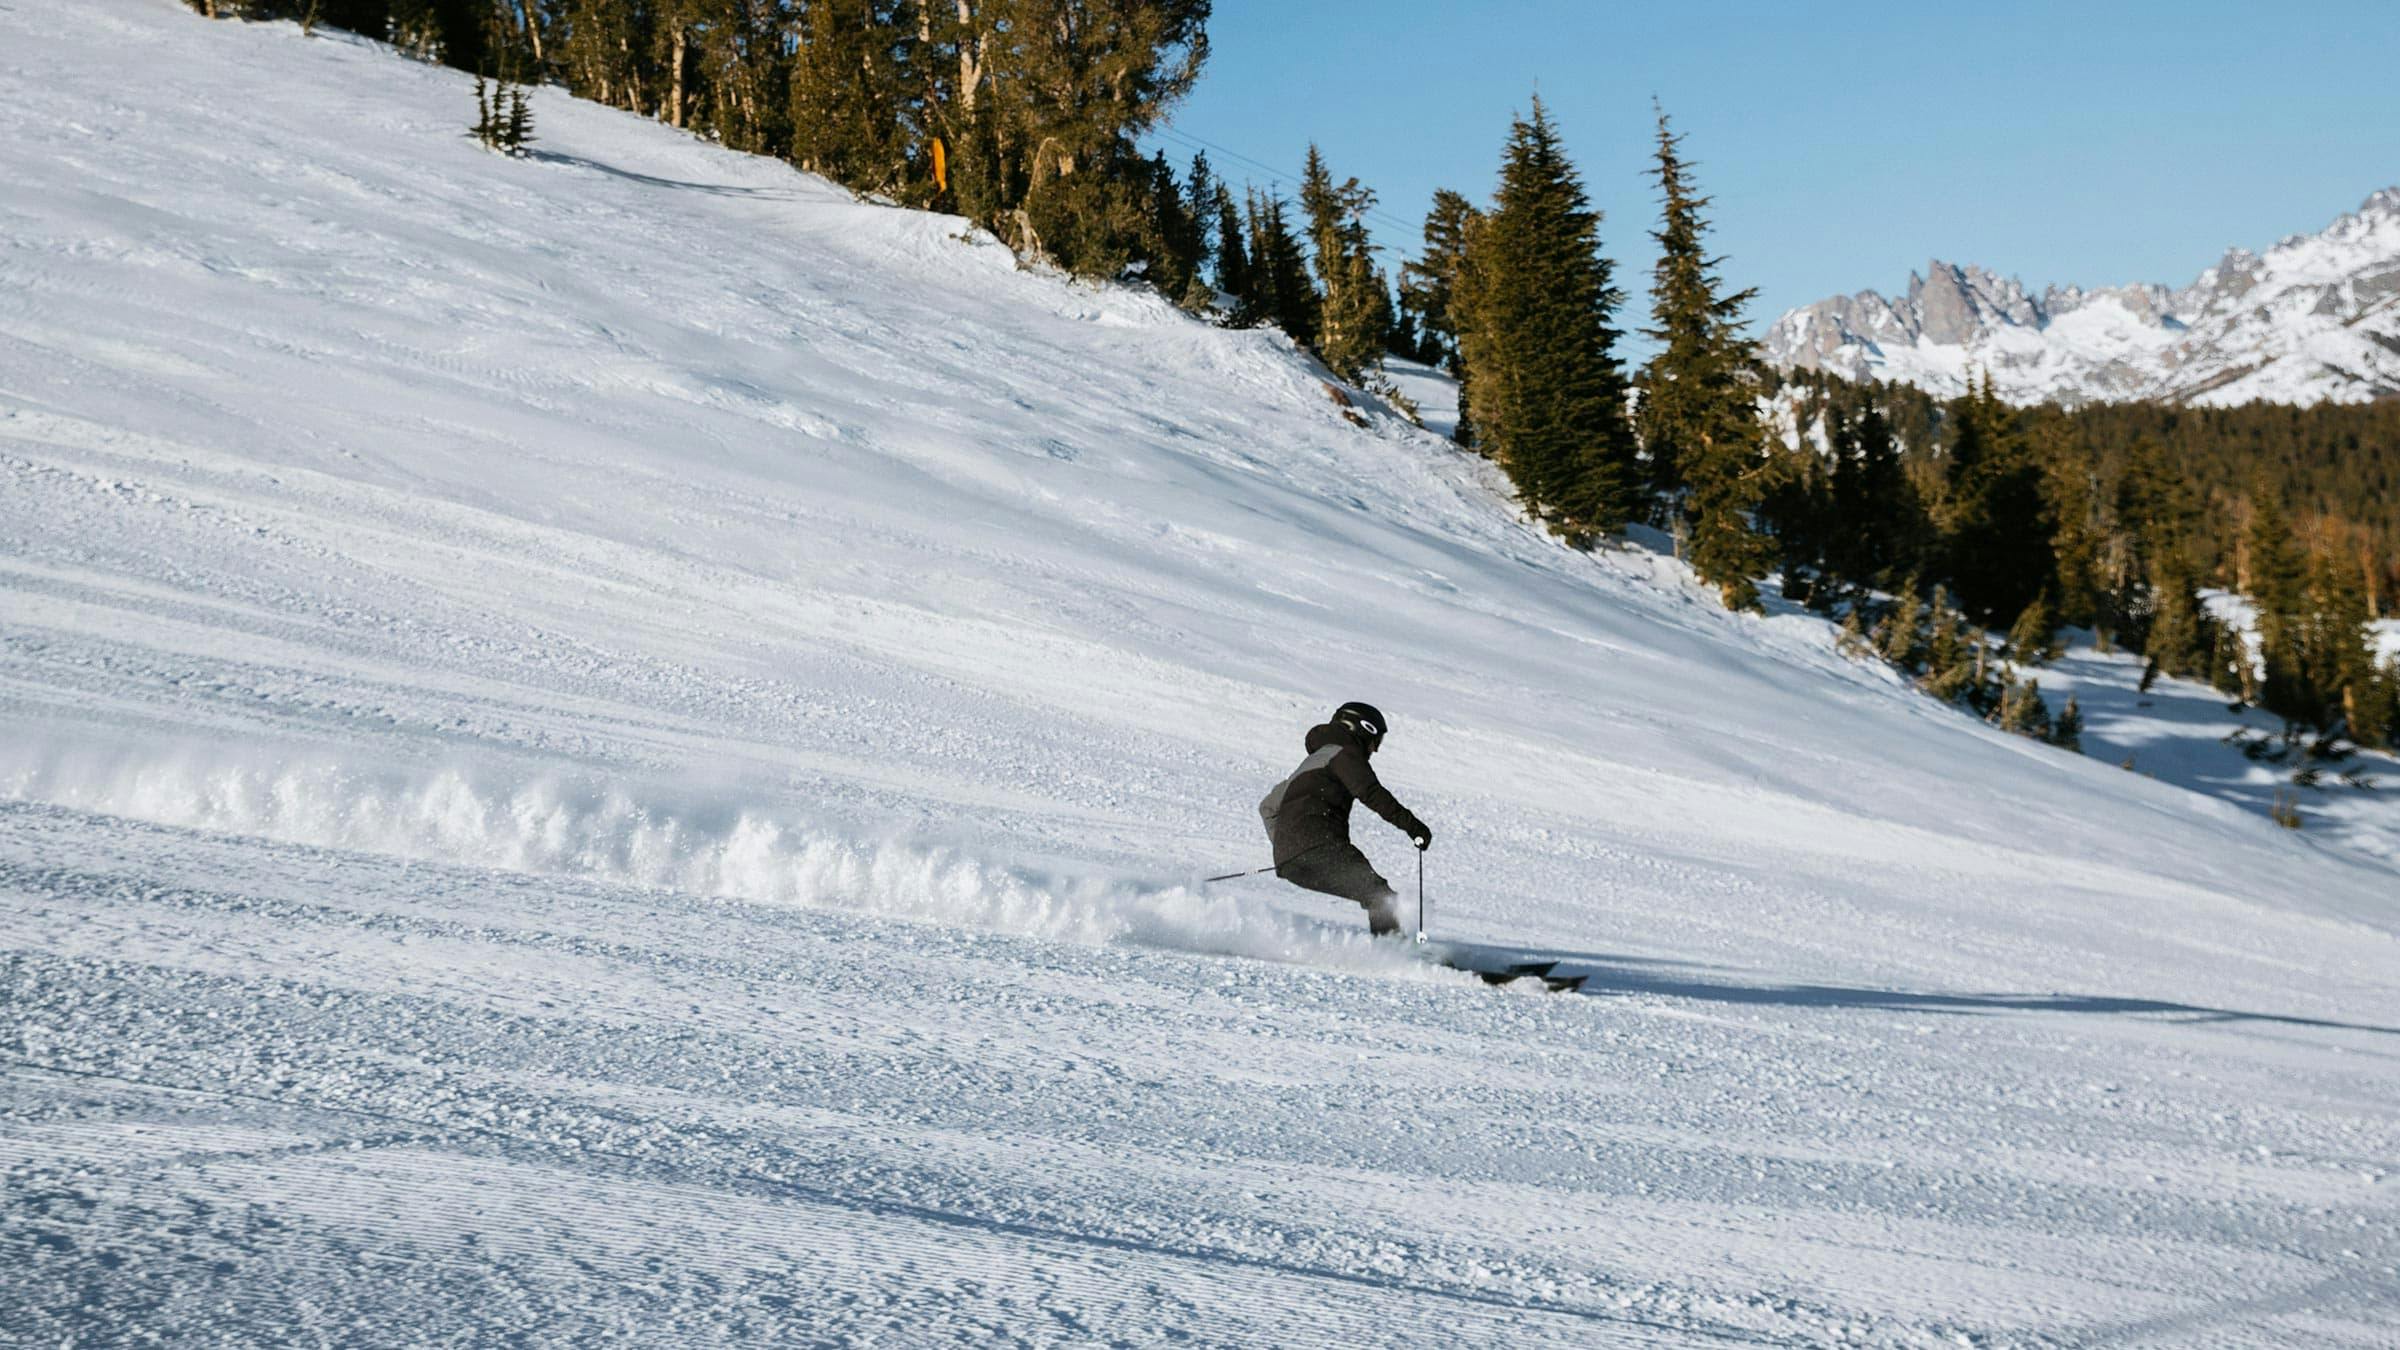 Skier on a groomed run